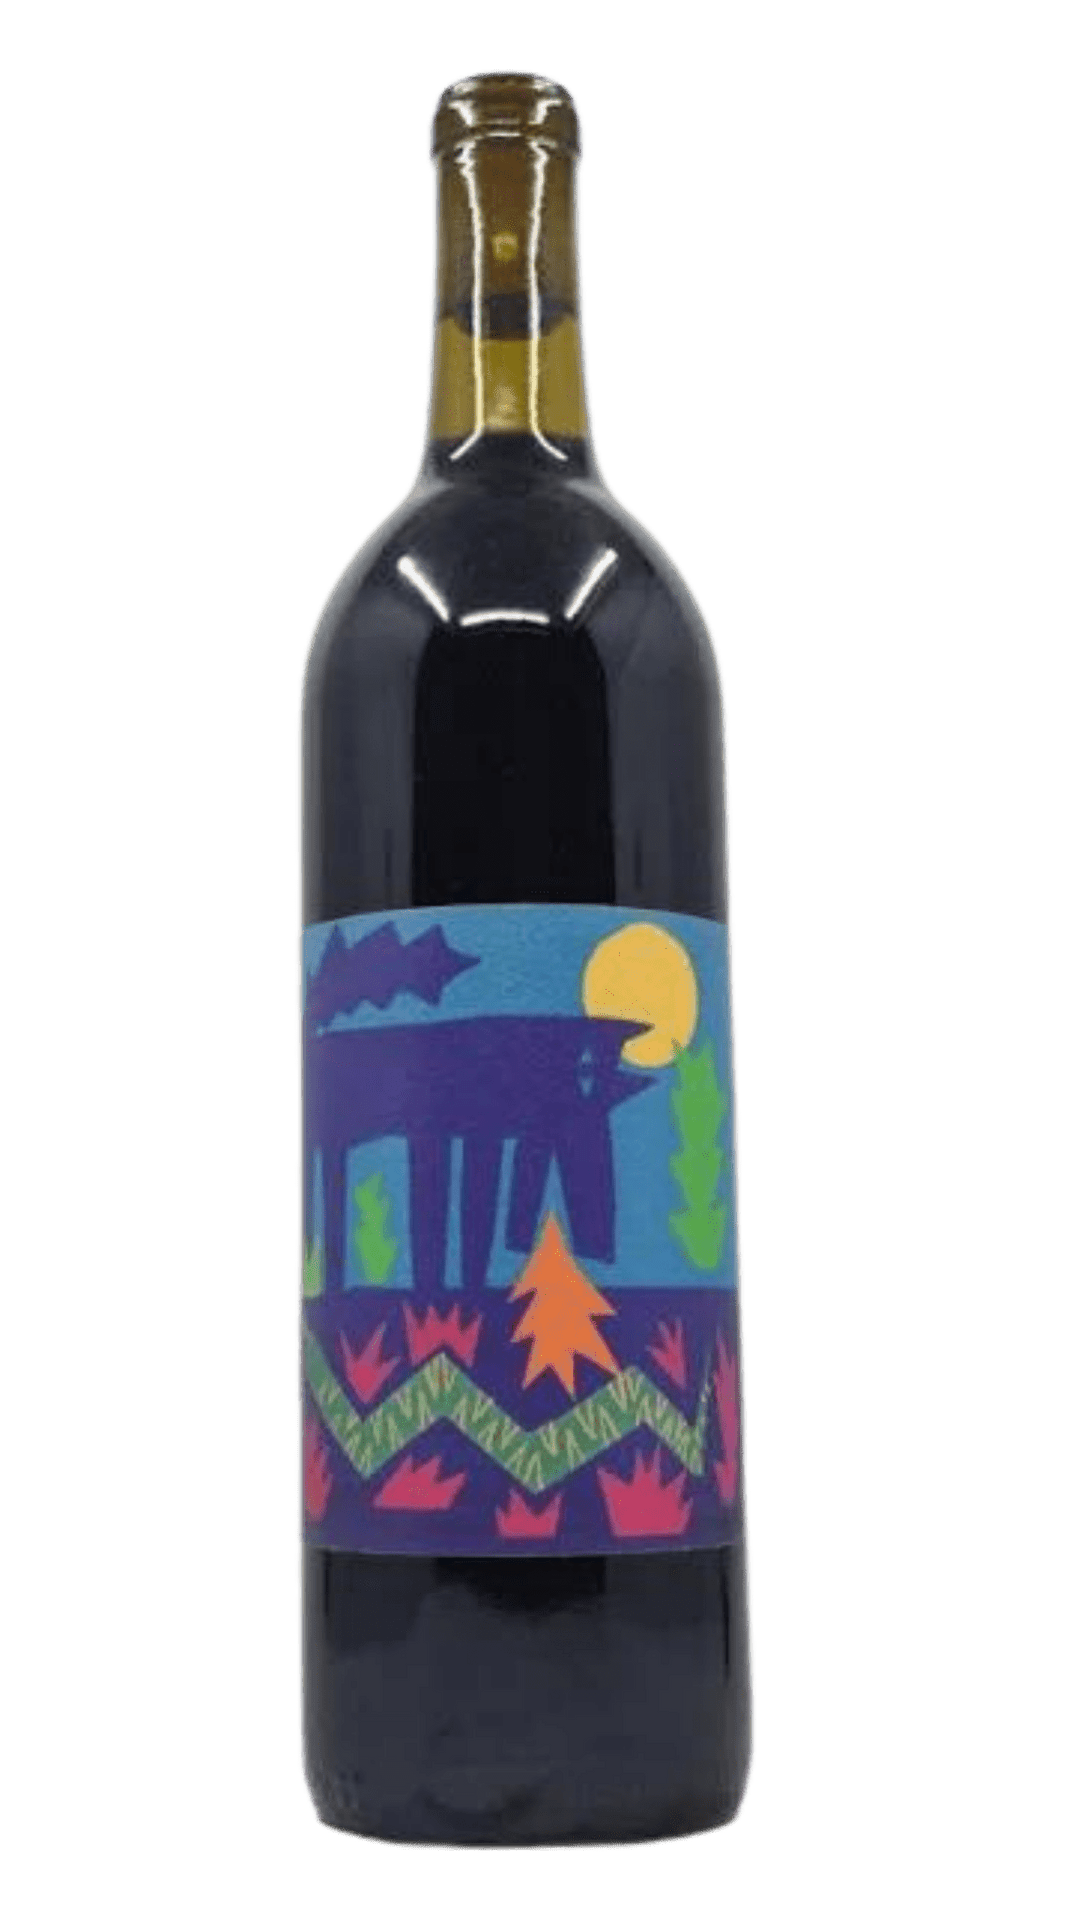 2022 Vinos Pijoan "El Carbónico", Valle de Guadalupe, MX - Harvest Wine Shop